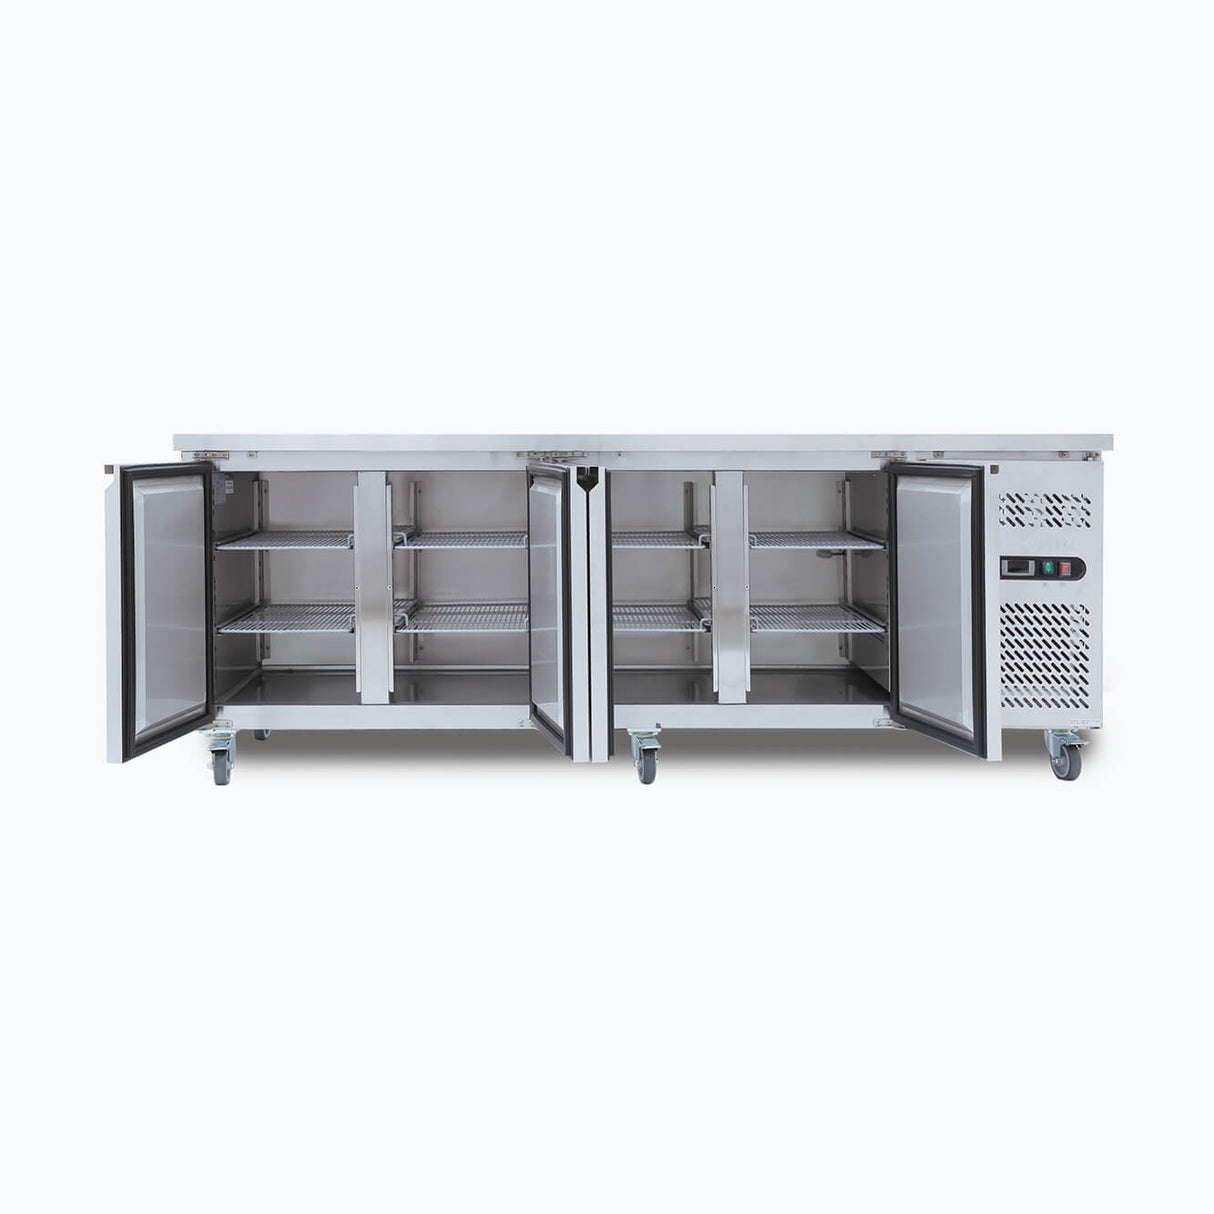 Under Bench Freezer - 553L - 4 Doors - Stainless Steel